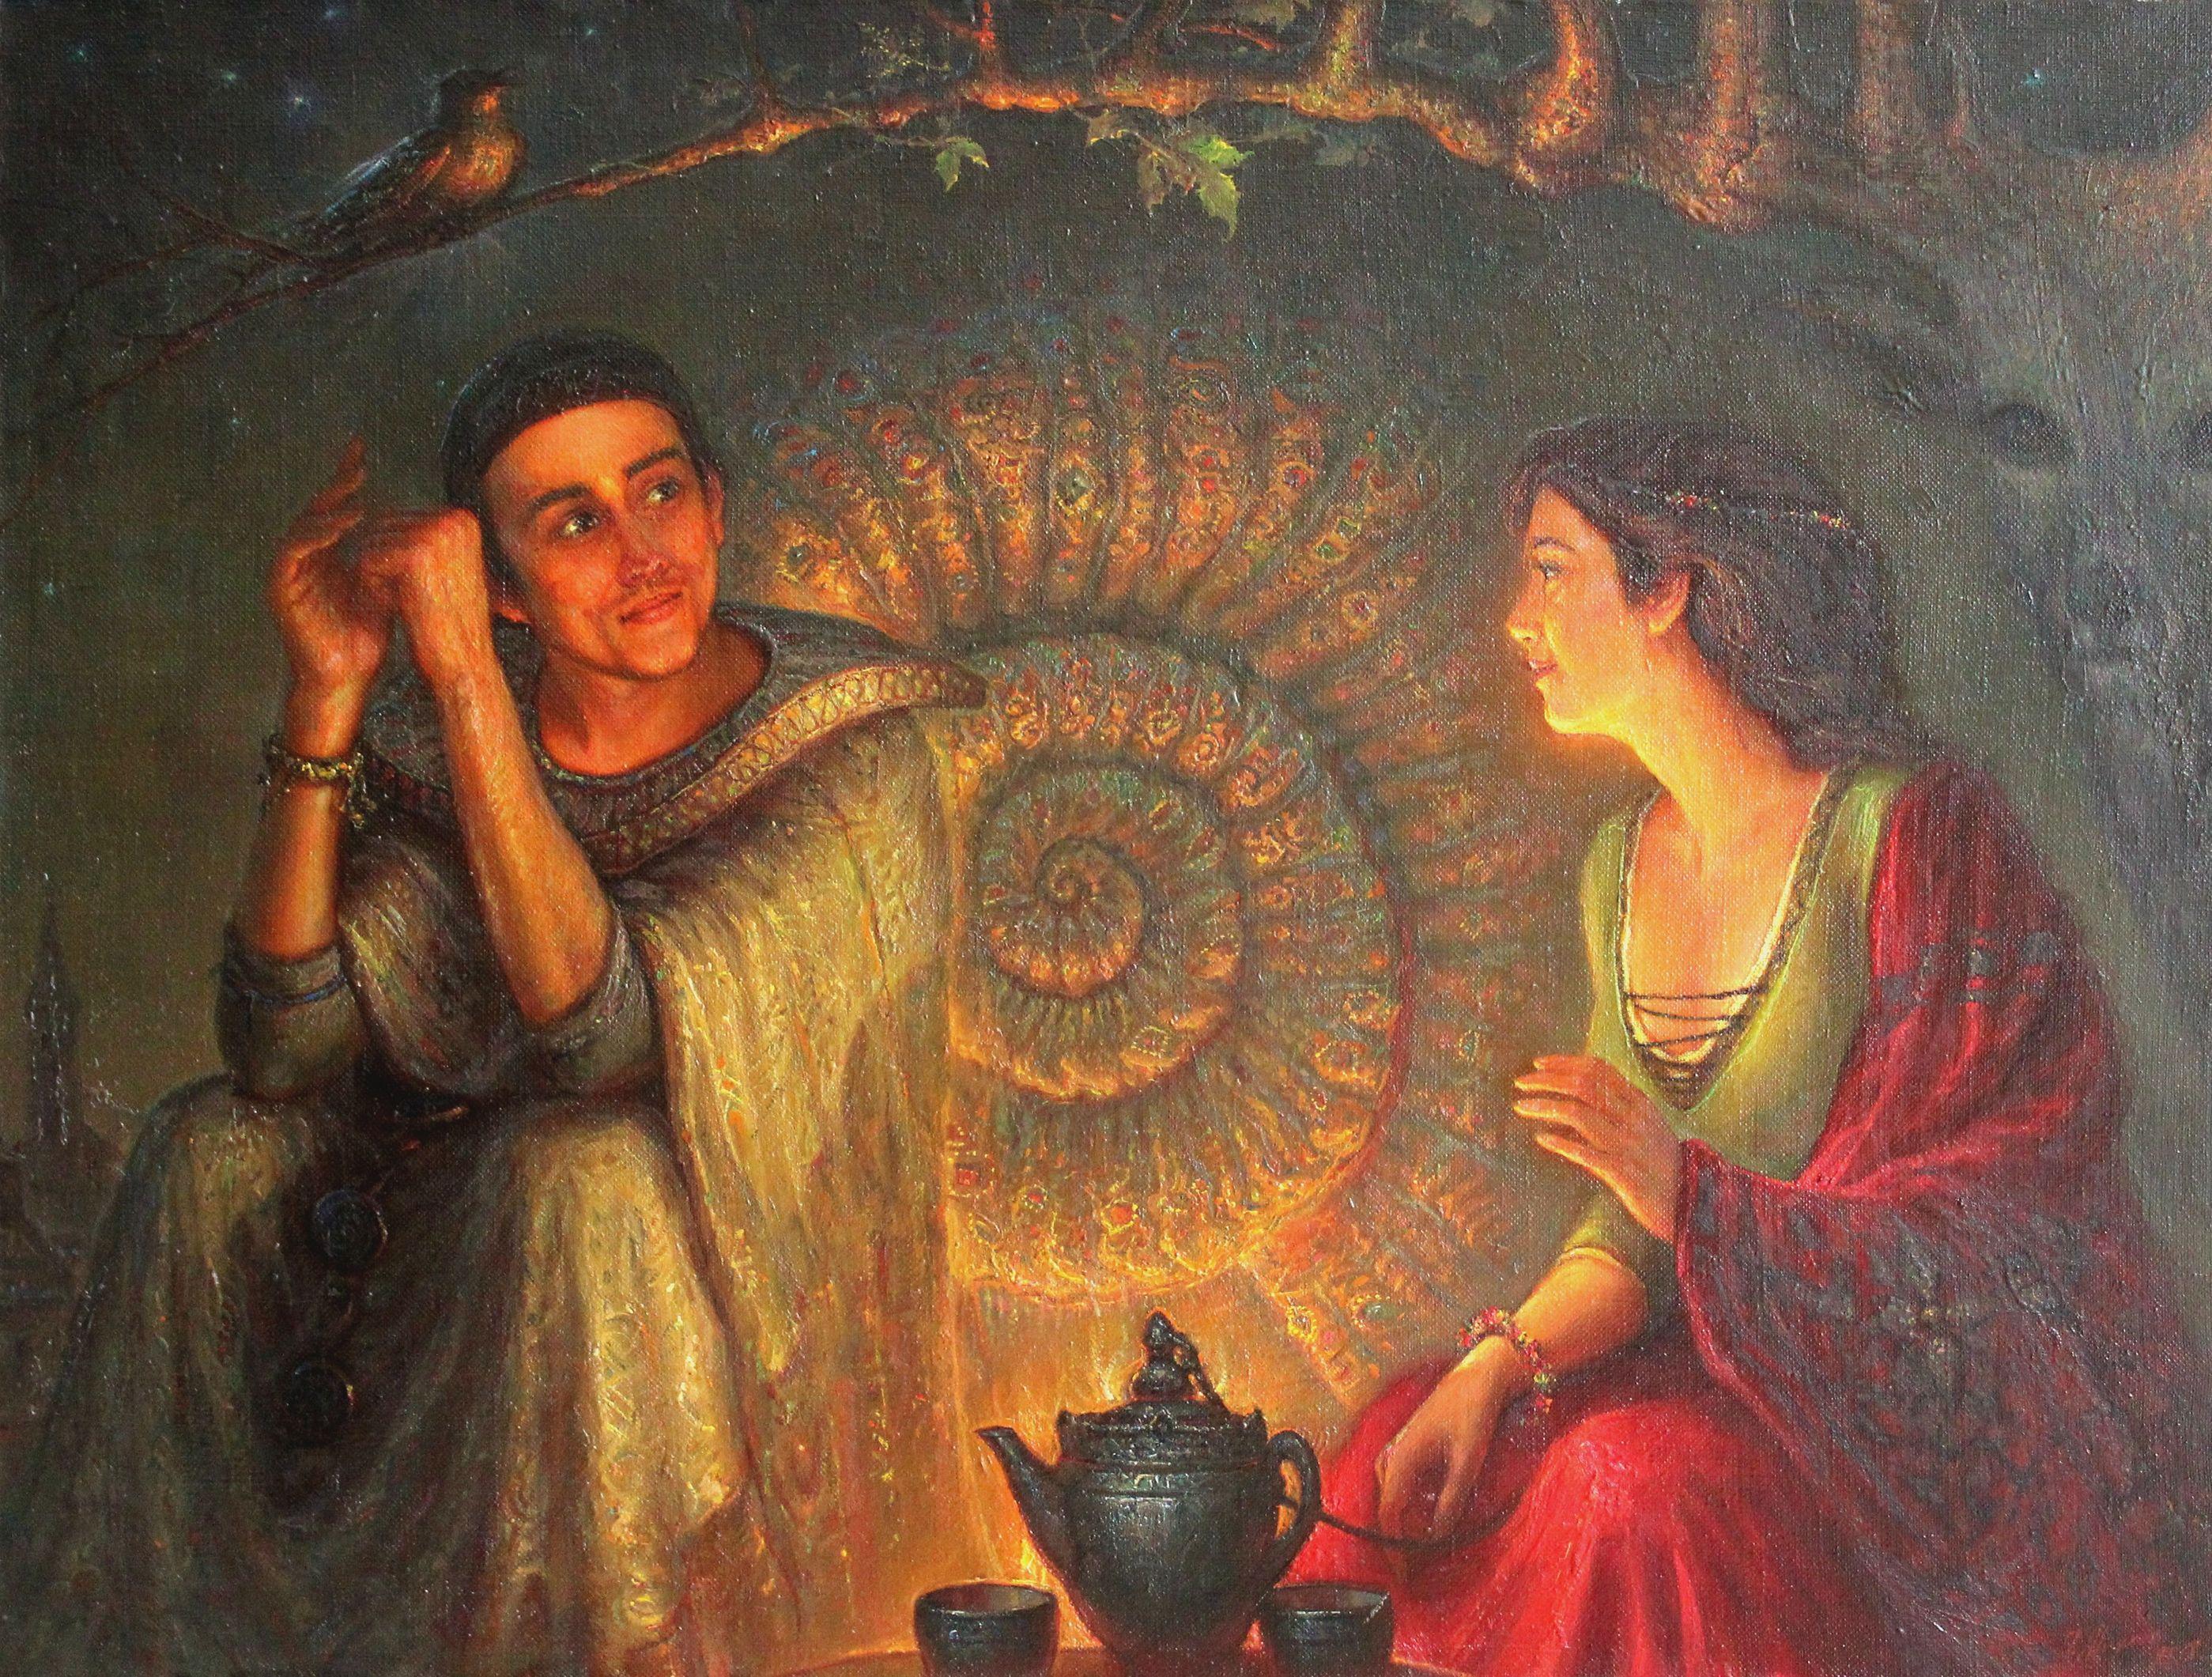 Fabuleuses histoires au feu vivant. 2002, toile, huile, 80 x106 cm - Painting de Igor Maikov